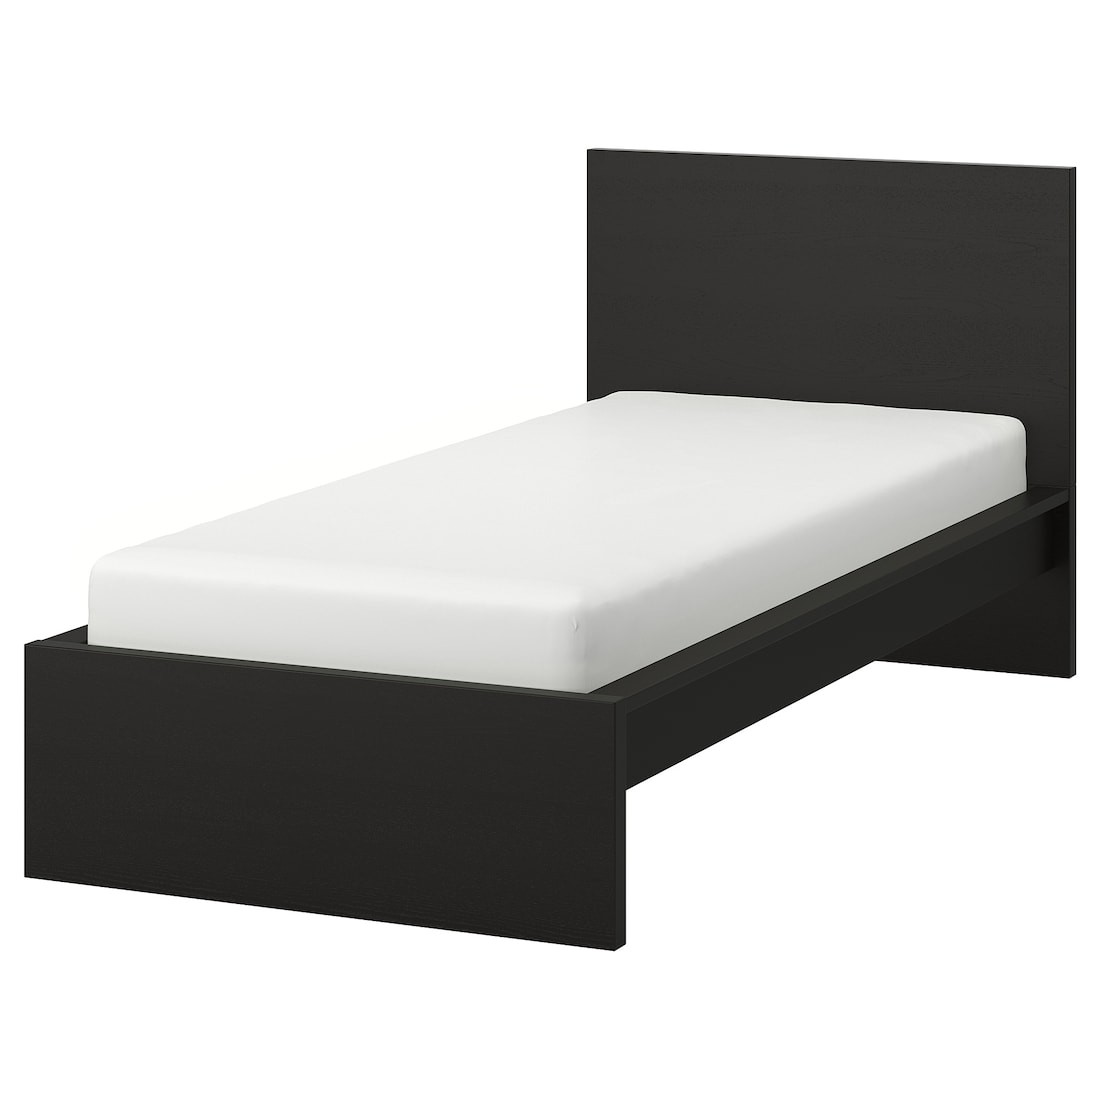 MALM МАЛЬМ Ліжко односпальне, високе, чорно-коричневий / Lindbåden, 90x200 см